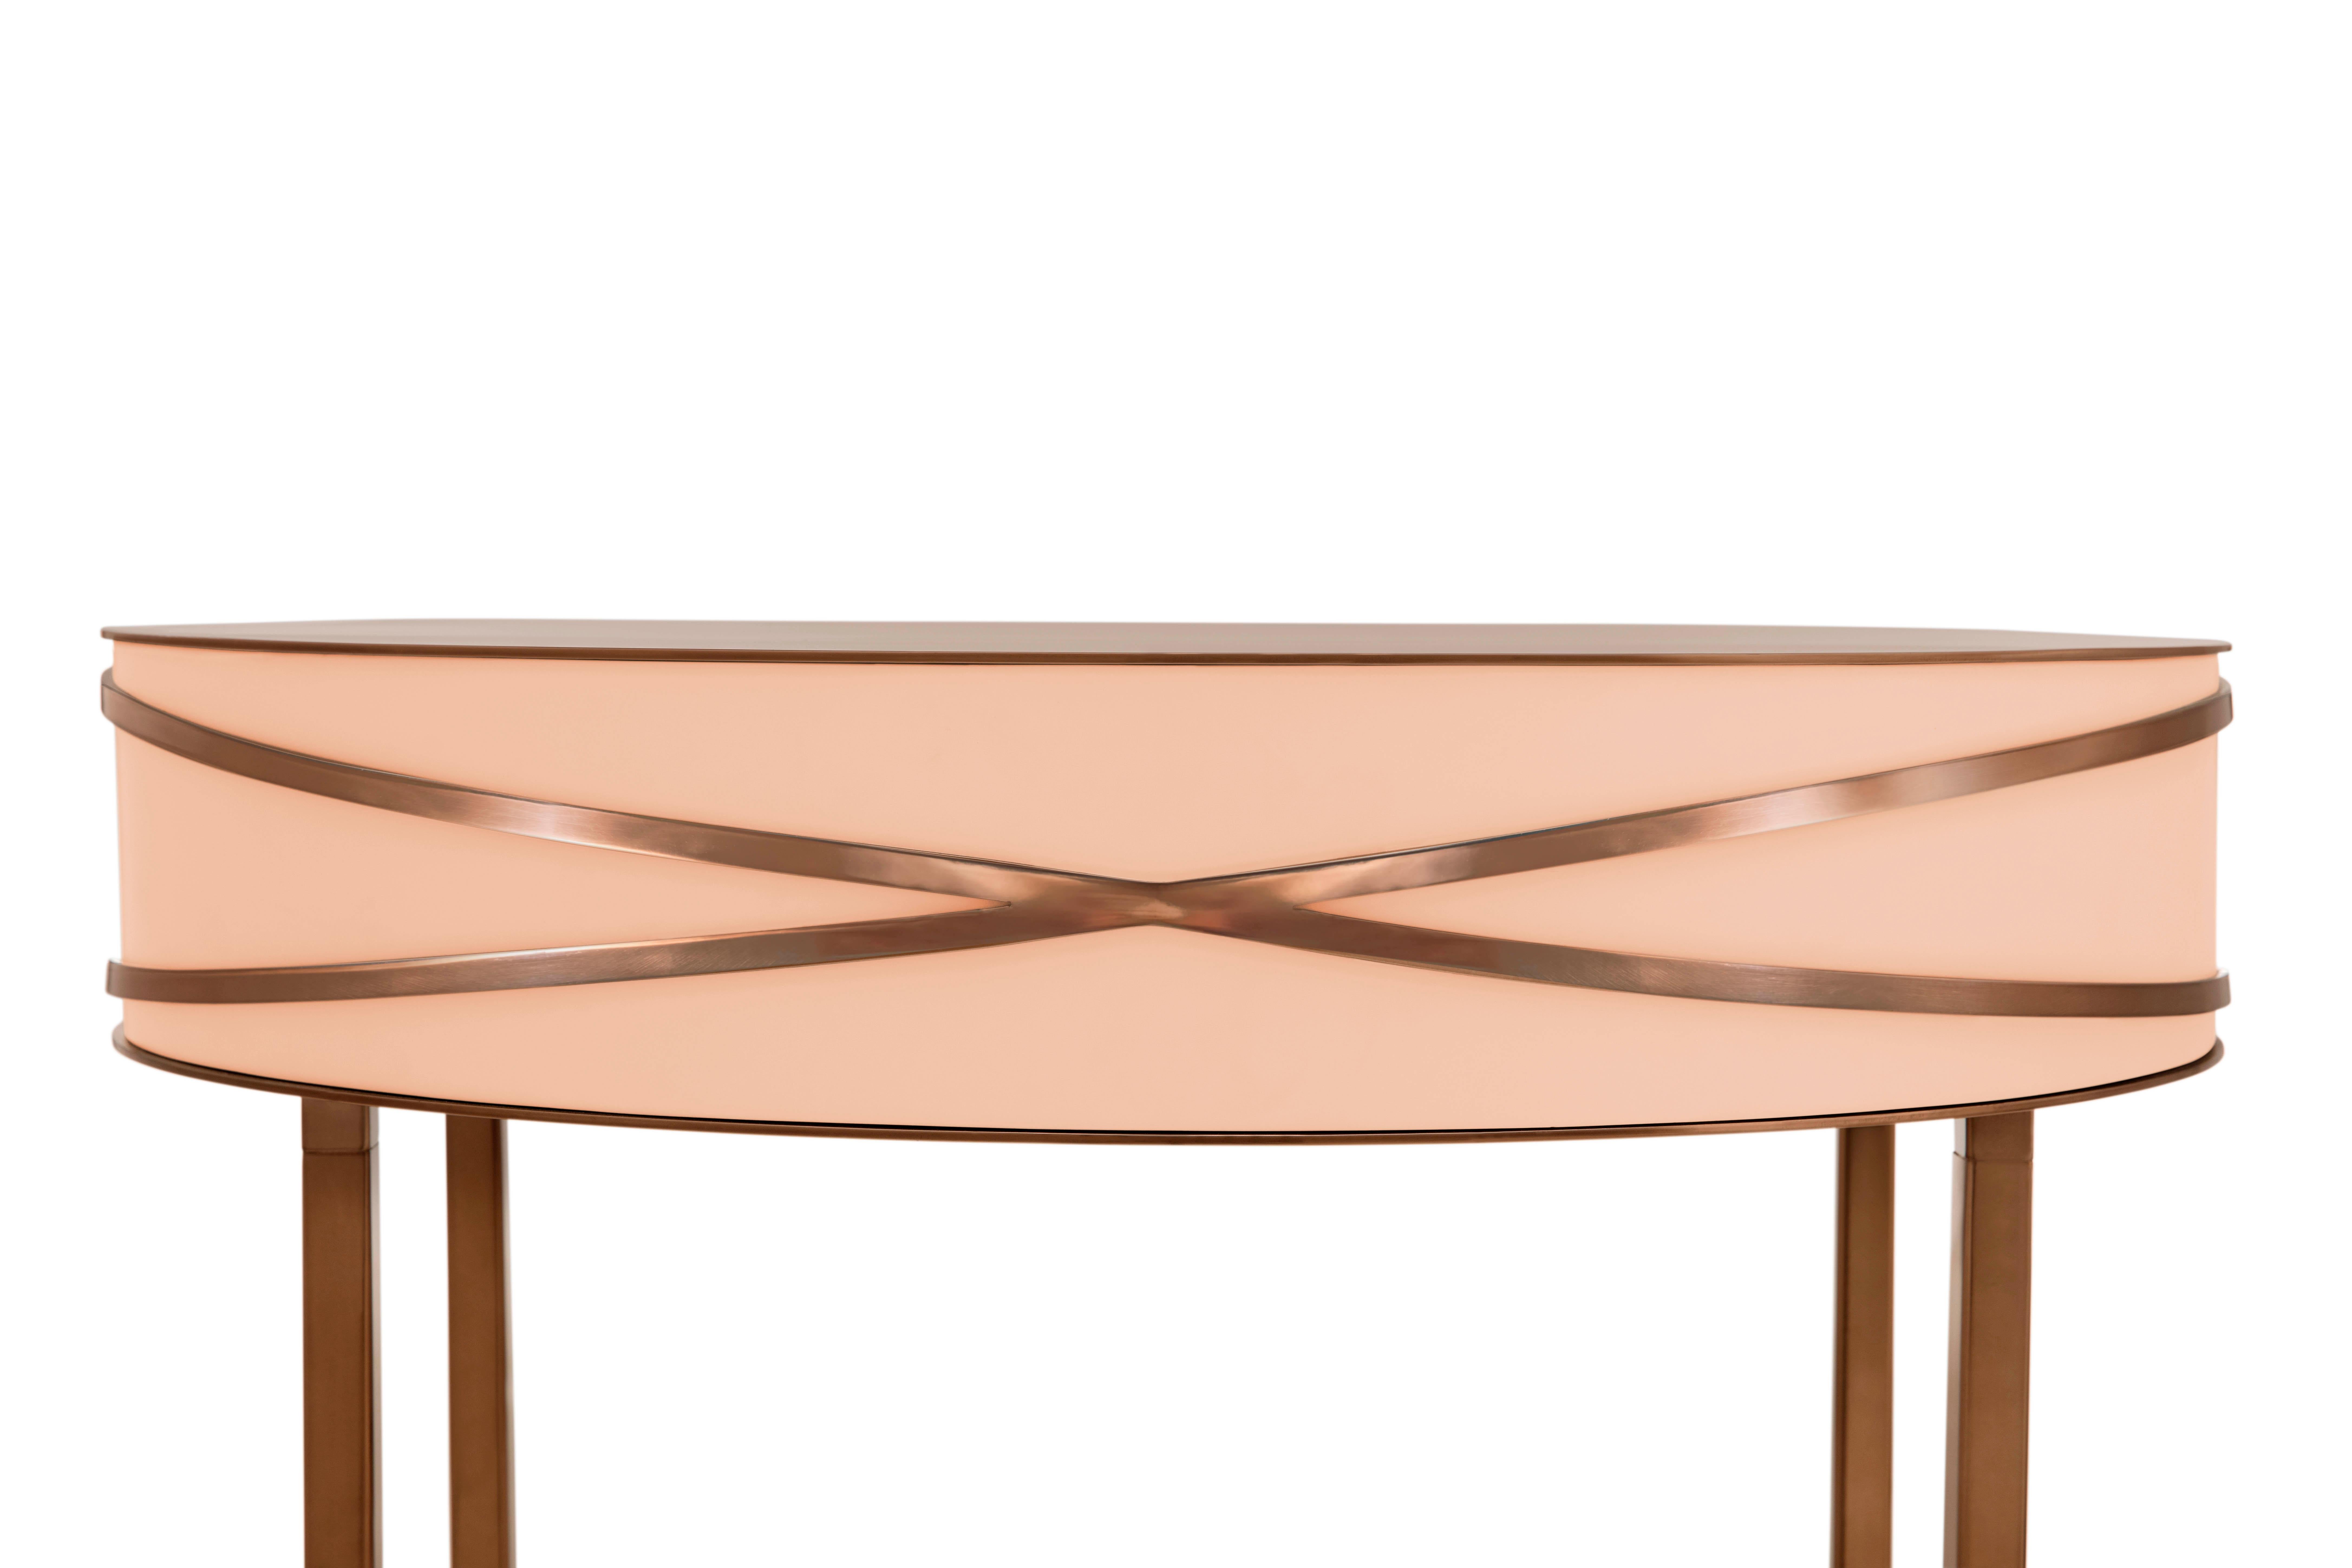 La table console ou table de chevet Stella Pink avec des garnitures en or rose de Nika Zupanc est une table console rose avec un tiroir et des garnitures en métal en or rose.

Nika Zupanc, designer slovène de renom, n'hésite jamais à redéfinir le